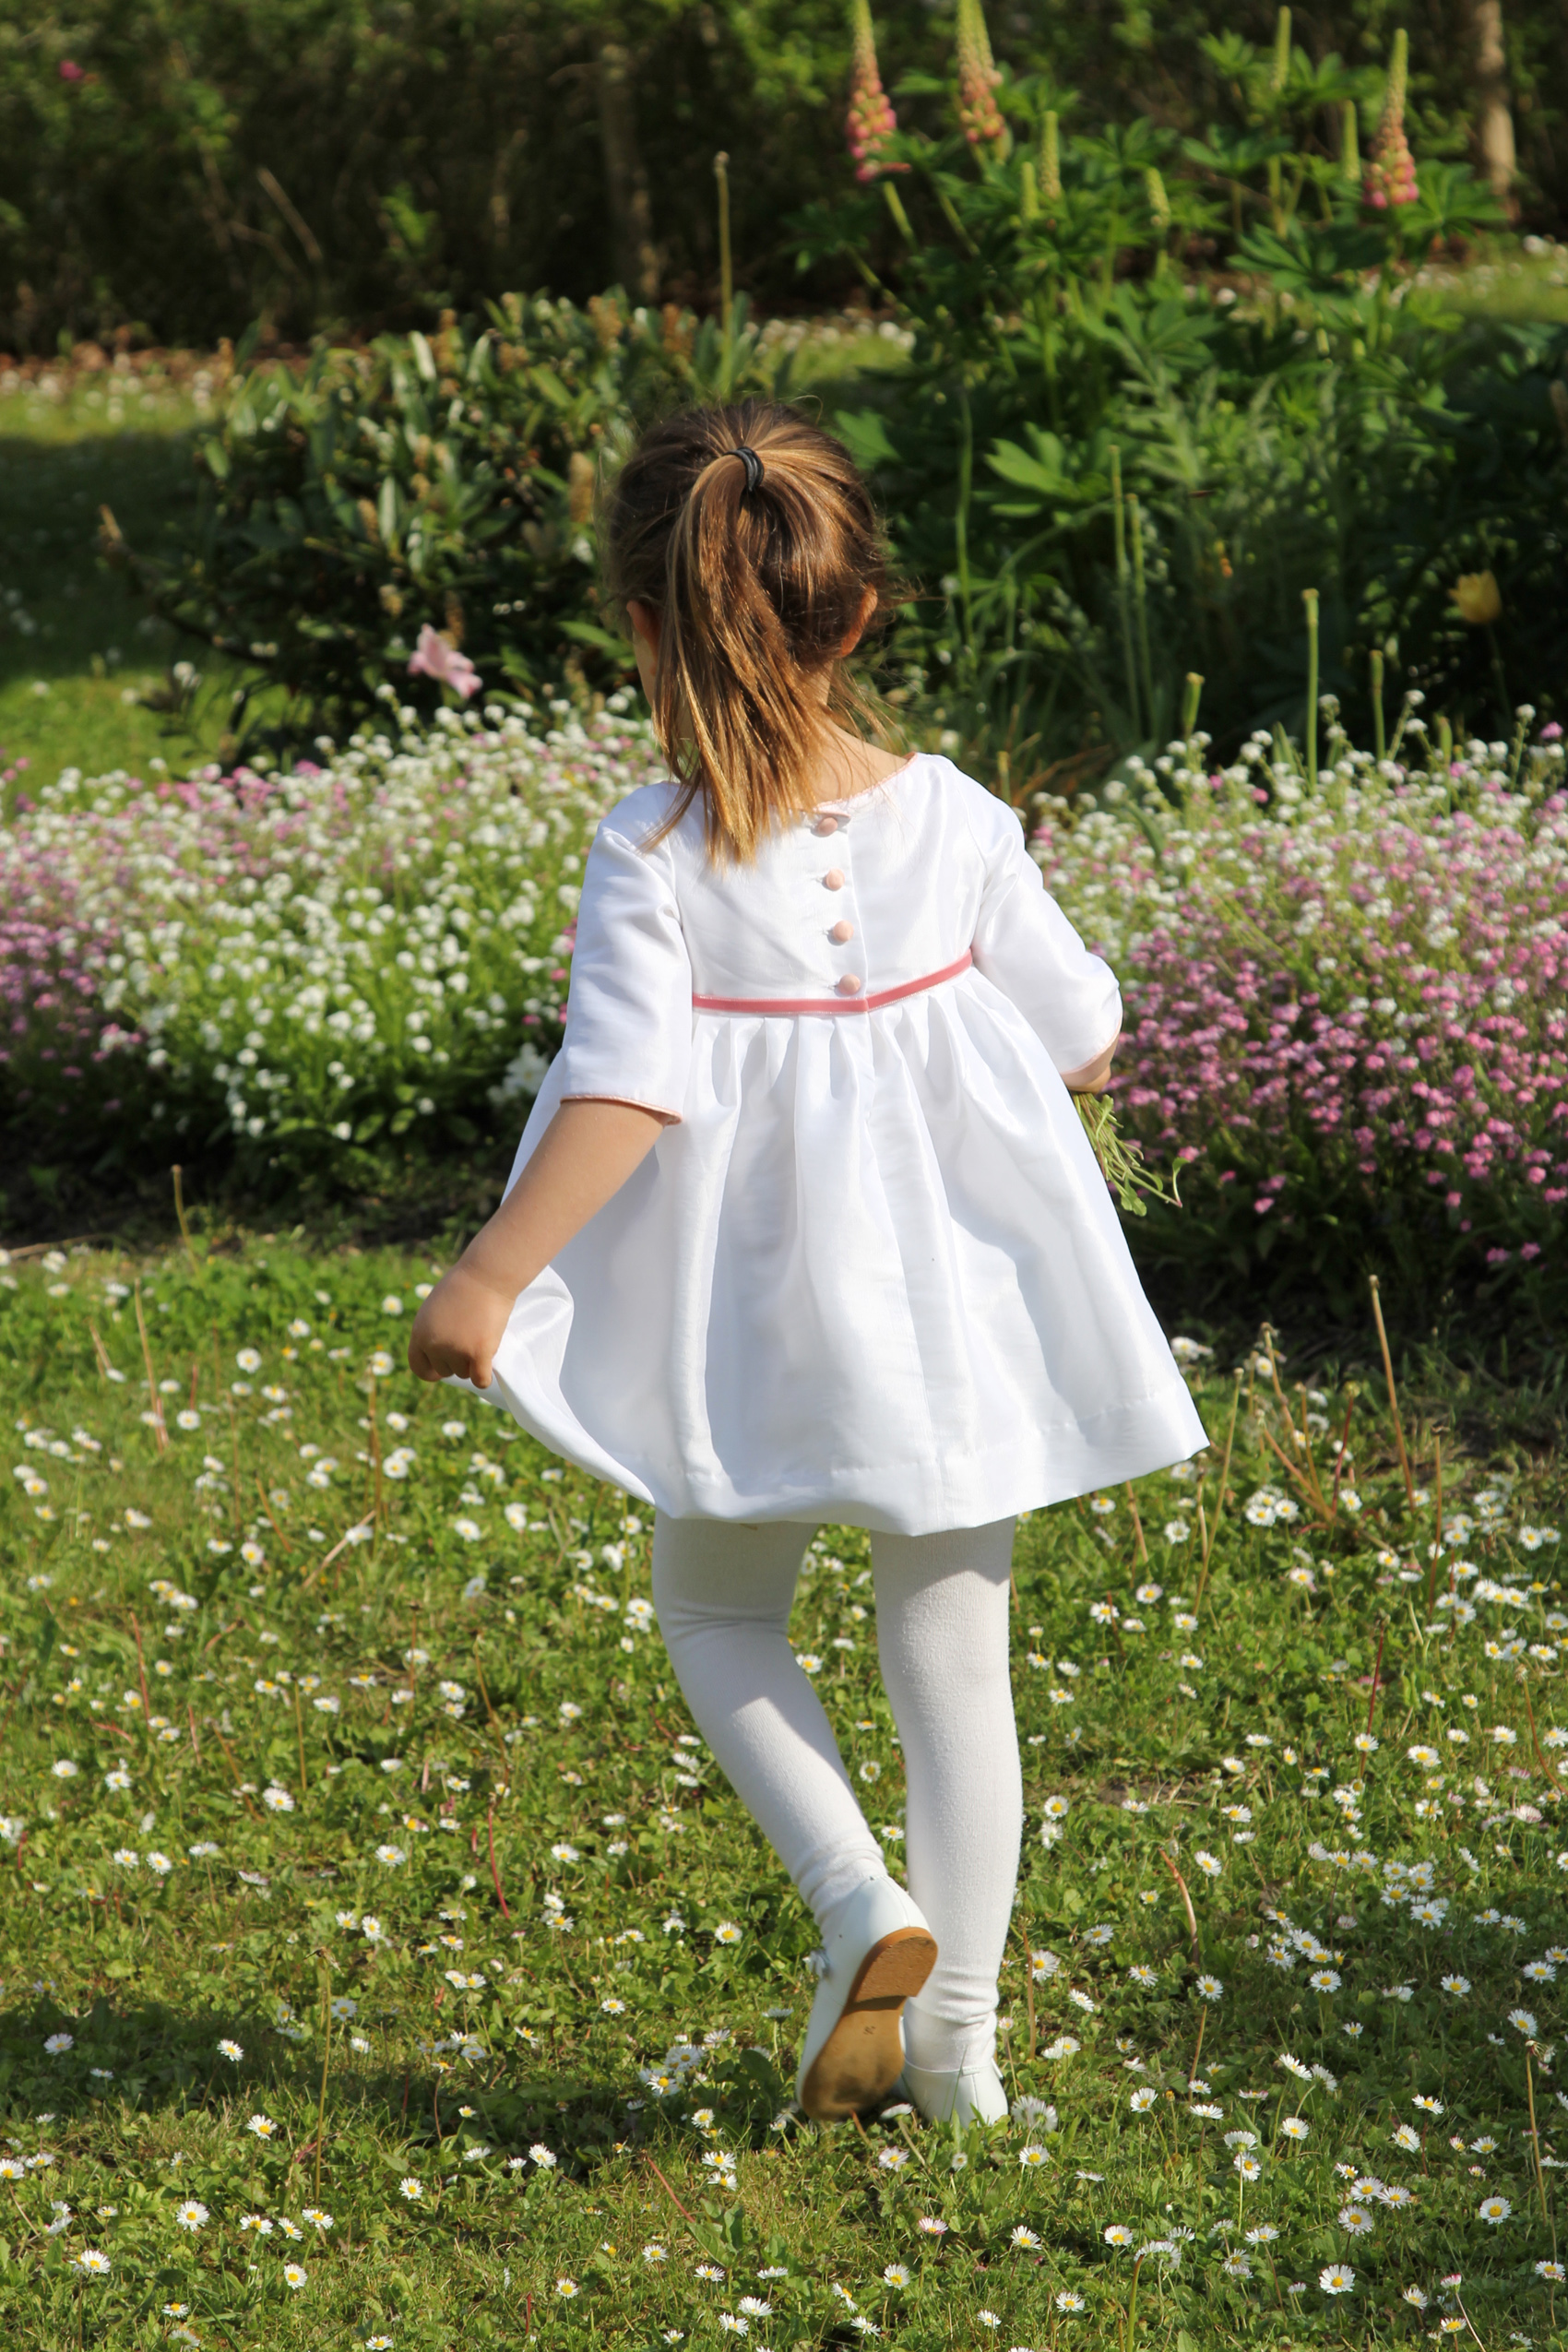 33 Little Eglantine flowergirl pageboy wedding clothes for children